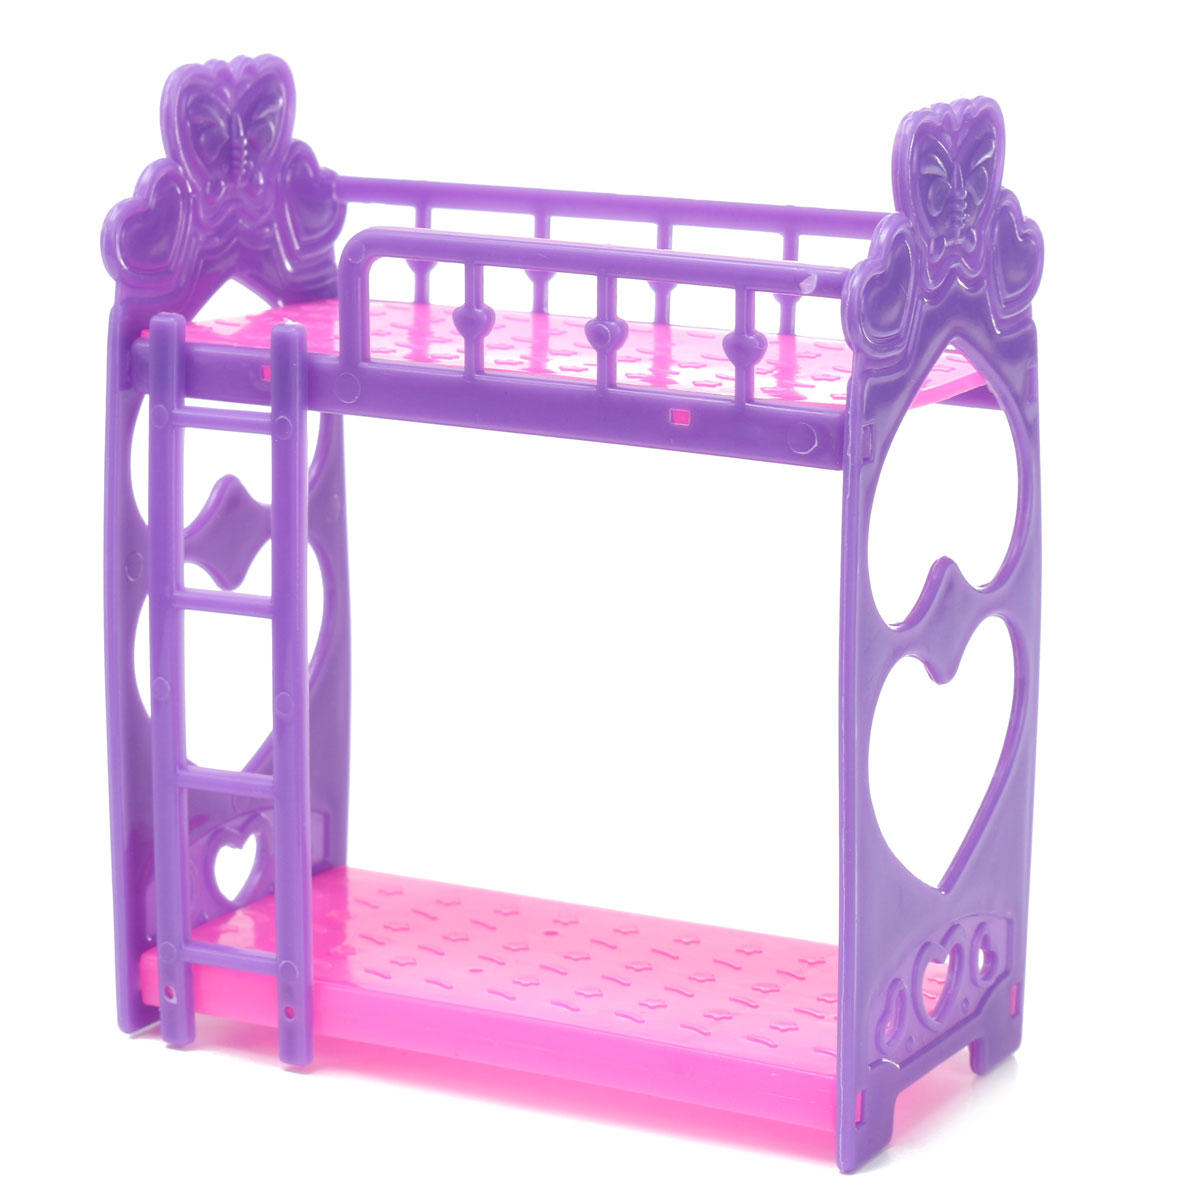 Miniatuur Dubbel Bed Toy Furniture Voor Dollhouse Decoratie